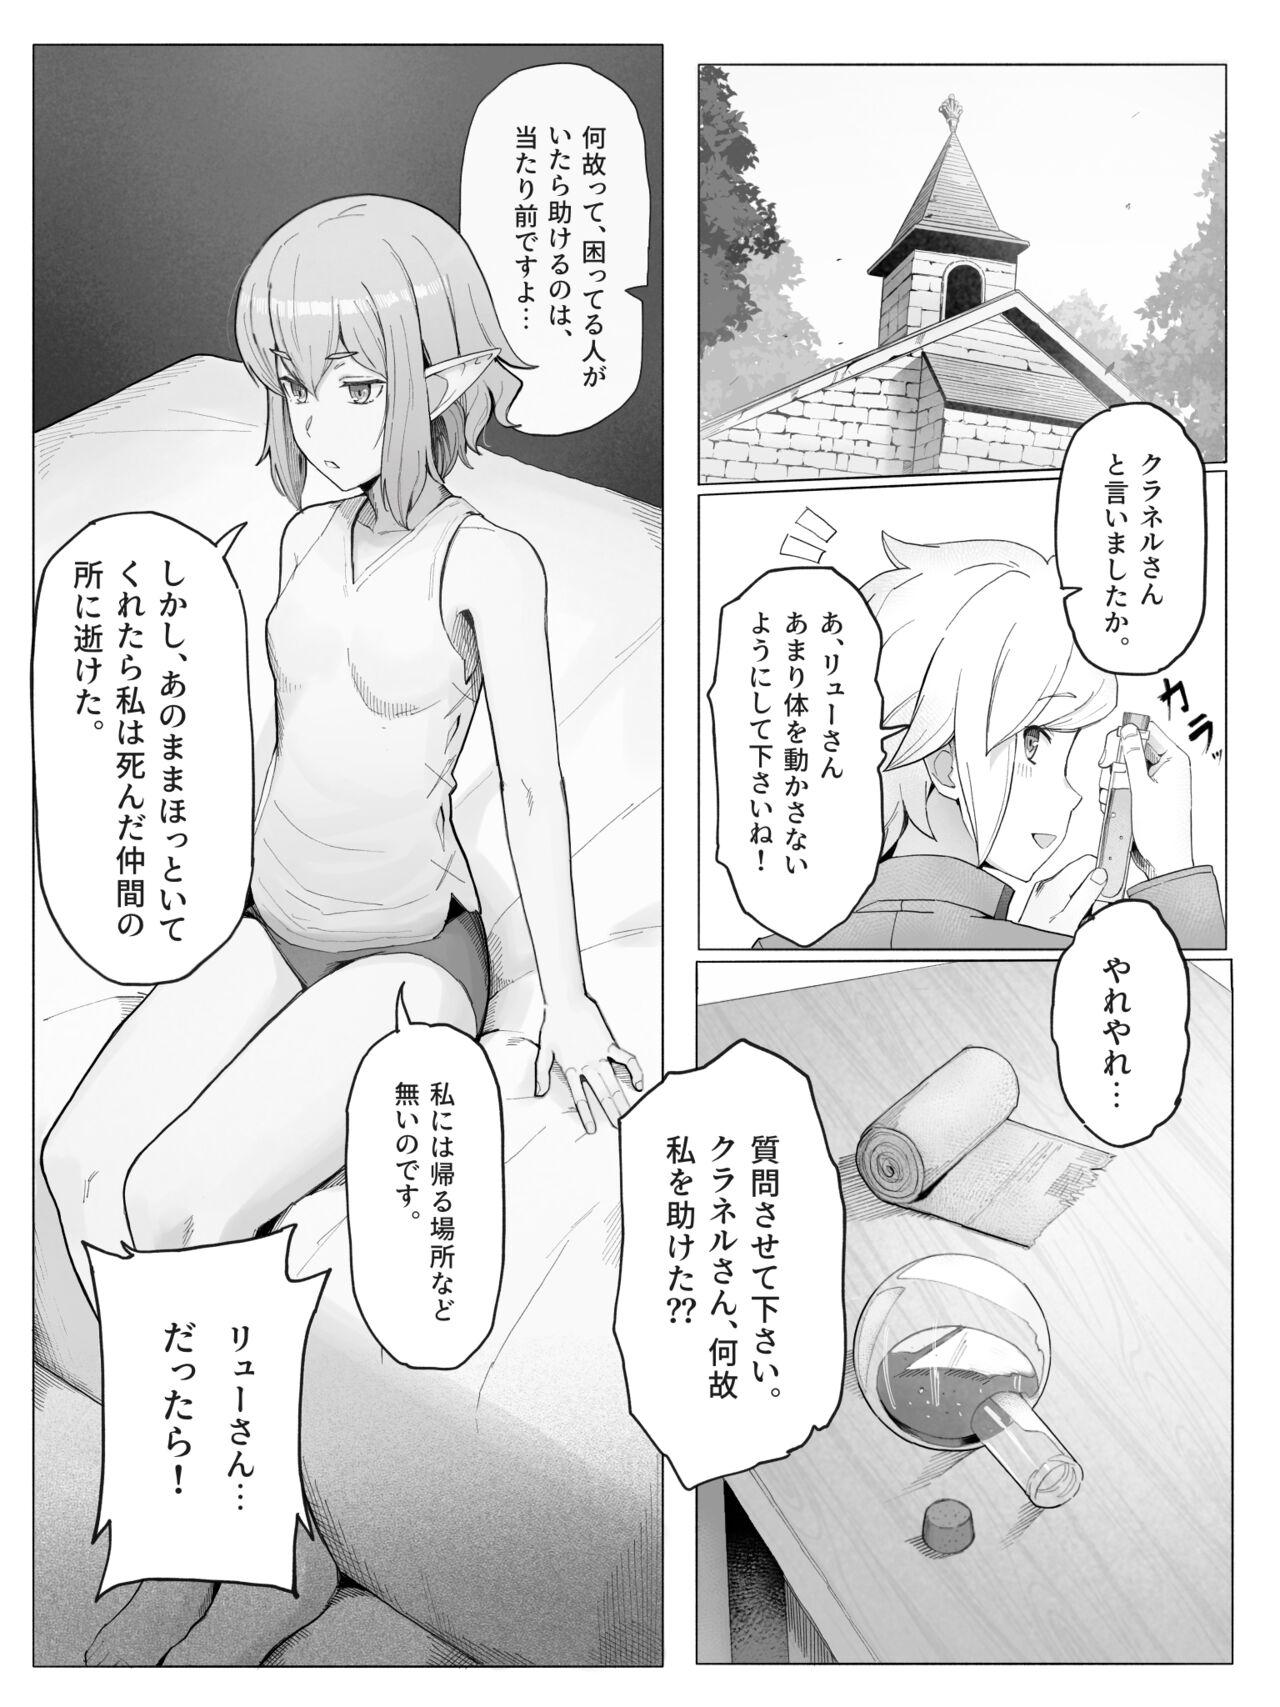 Bhabhi Bell Ryuu Ecchi na Manga - Dungeon ni deai o motomeru no wa machigatteiru darou ka Thick - Page 6